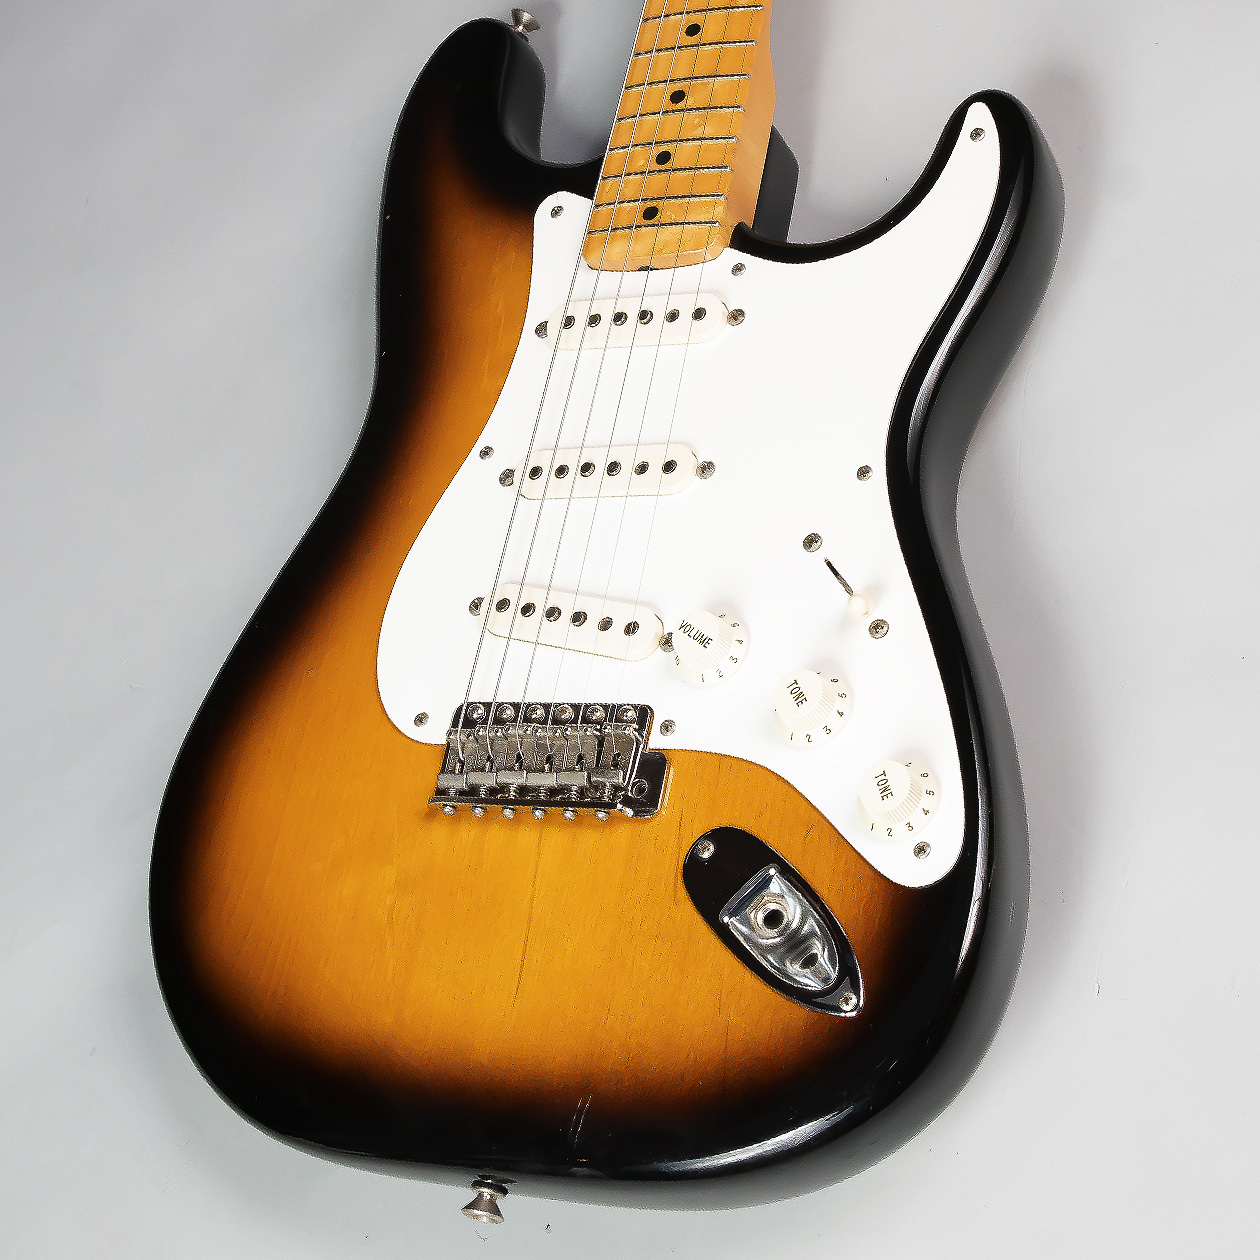 *Fender Custom Shop 1957 Stratocaster 1996年製 認定書から1996年の初頭に製作された個体になるかと思います。CNシリアルですが96年初頭でありますのでマスターグレードではないと思われます。ネックがやや順反りではございますがコンディションは良いので末永くご愛 […]